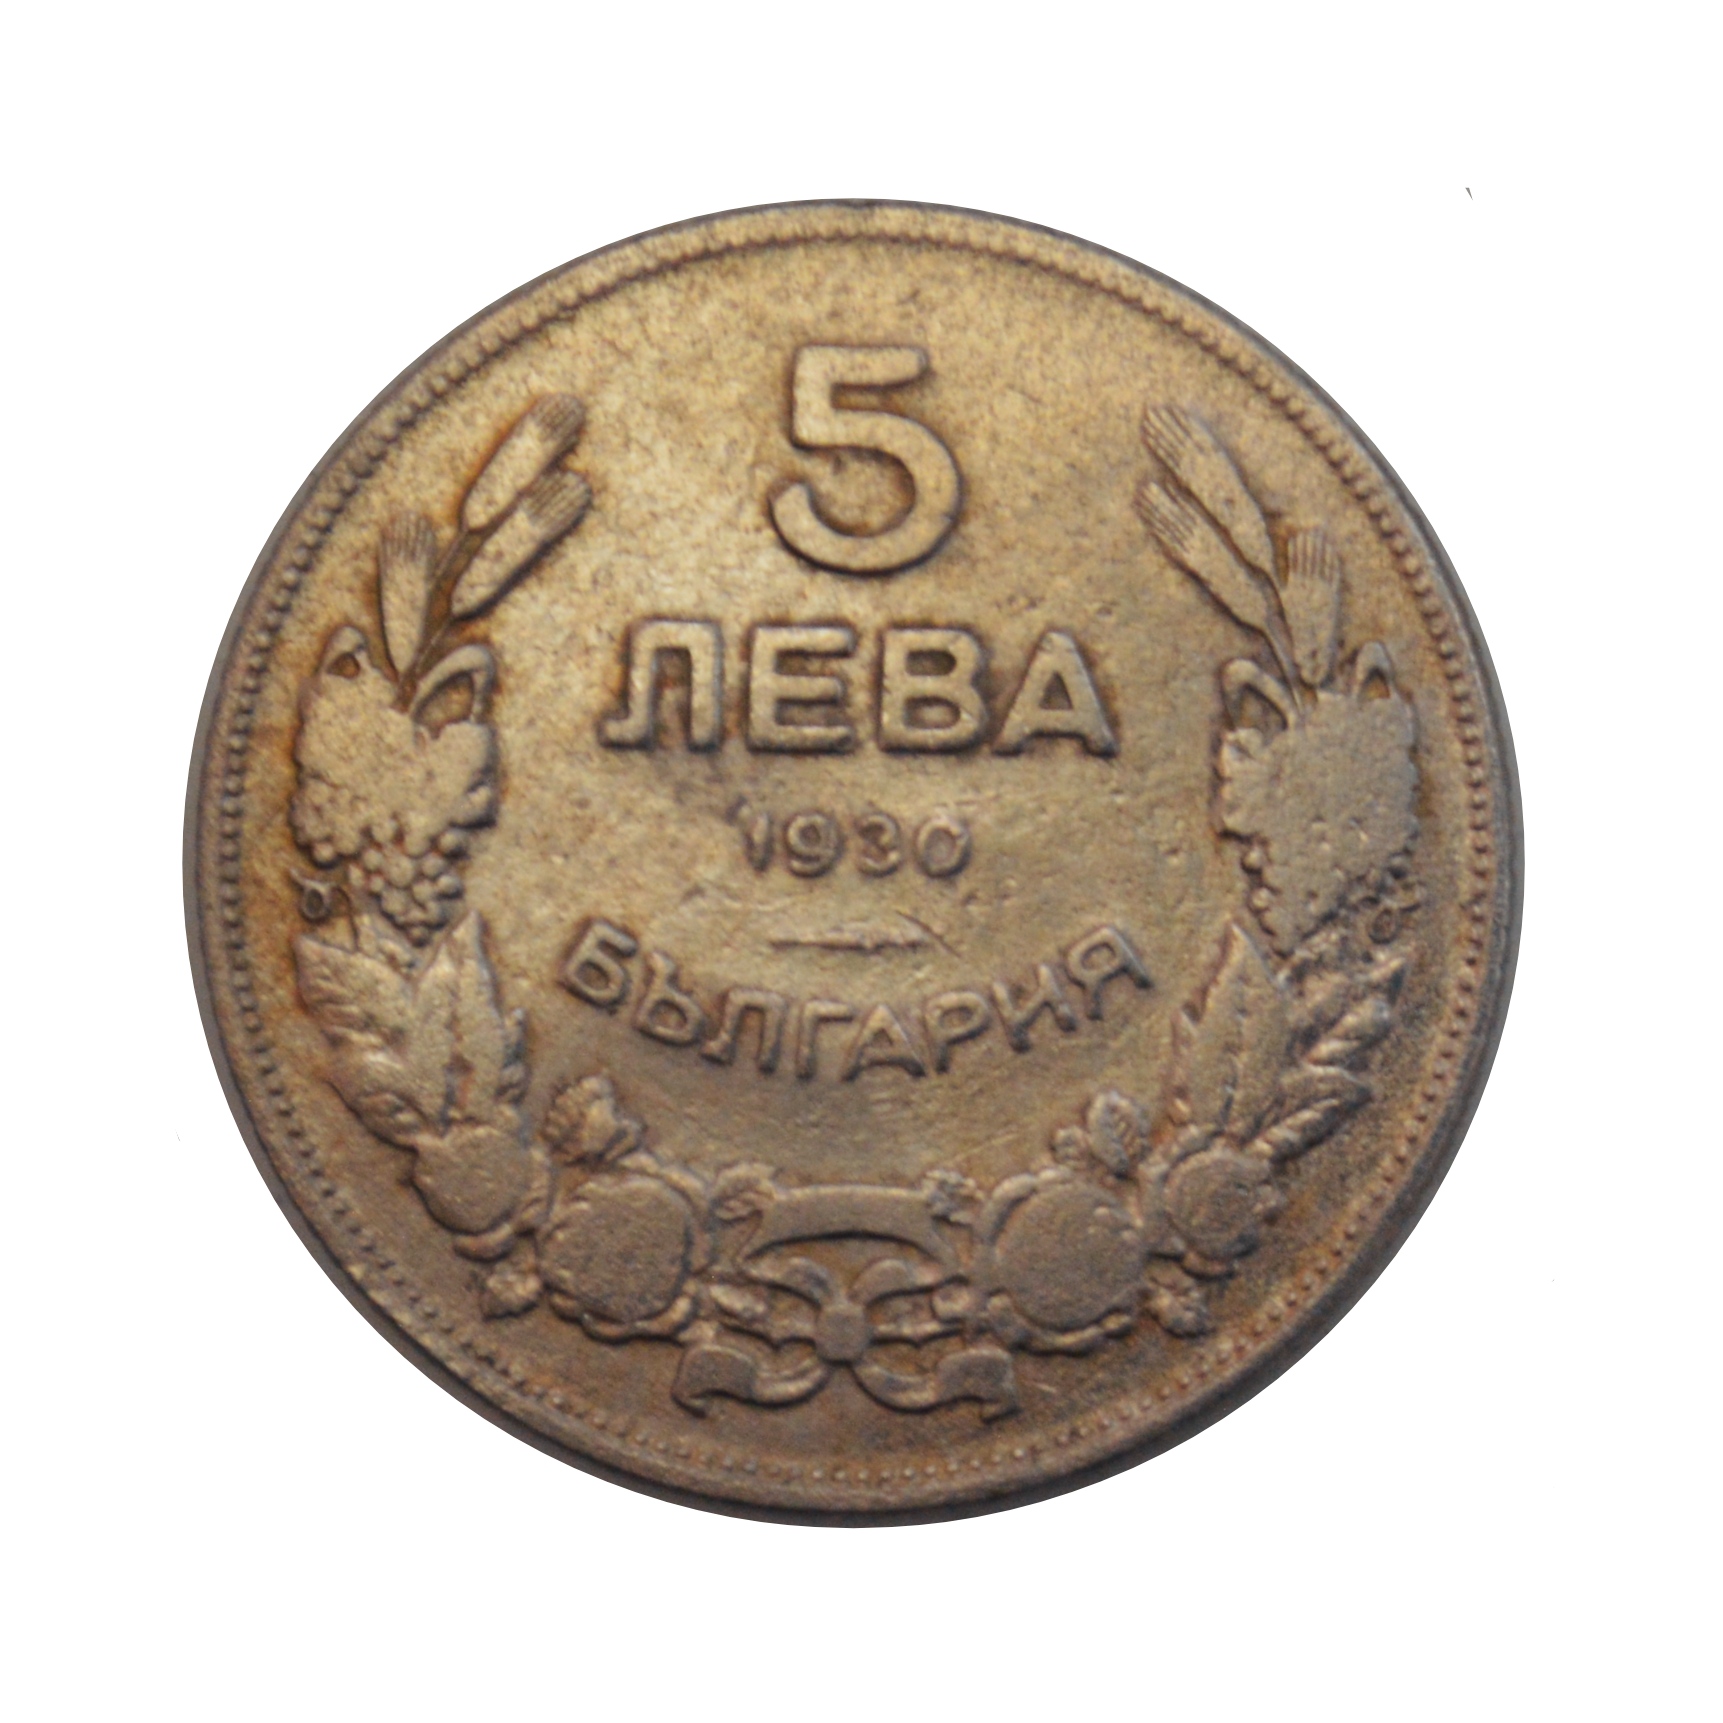 سکه تزیینی طرح کشور بلغارستان مدل 5 لئو 1930 میلادی